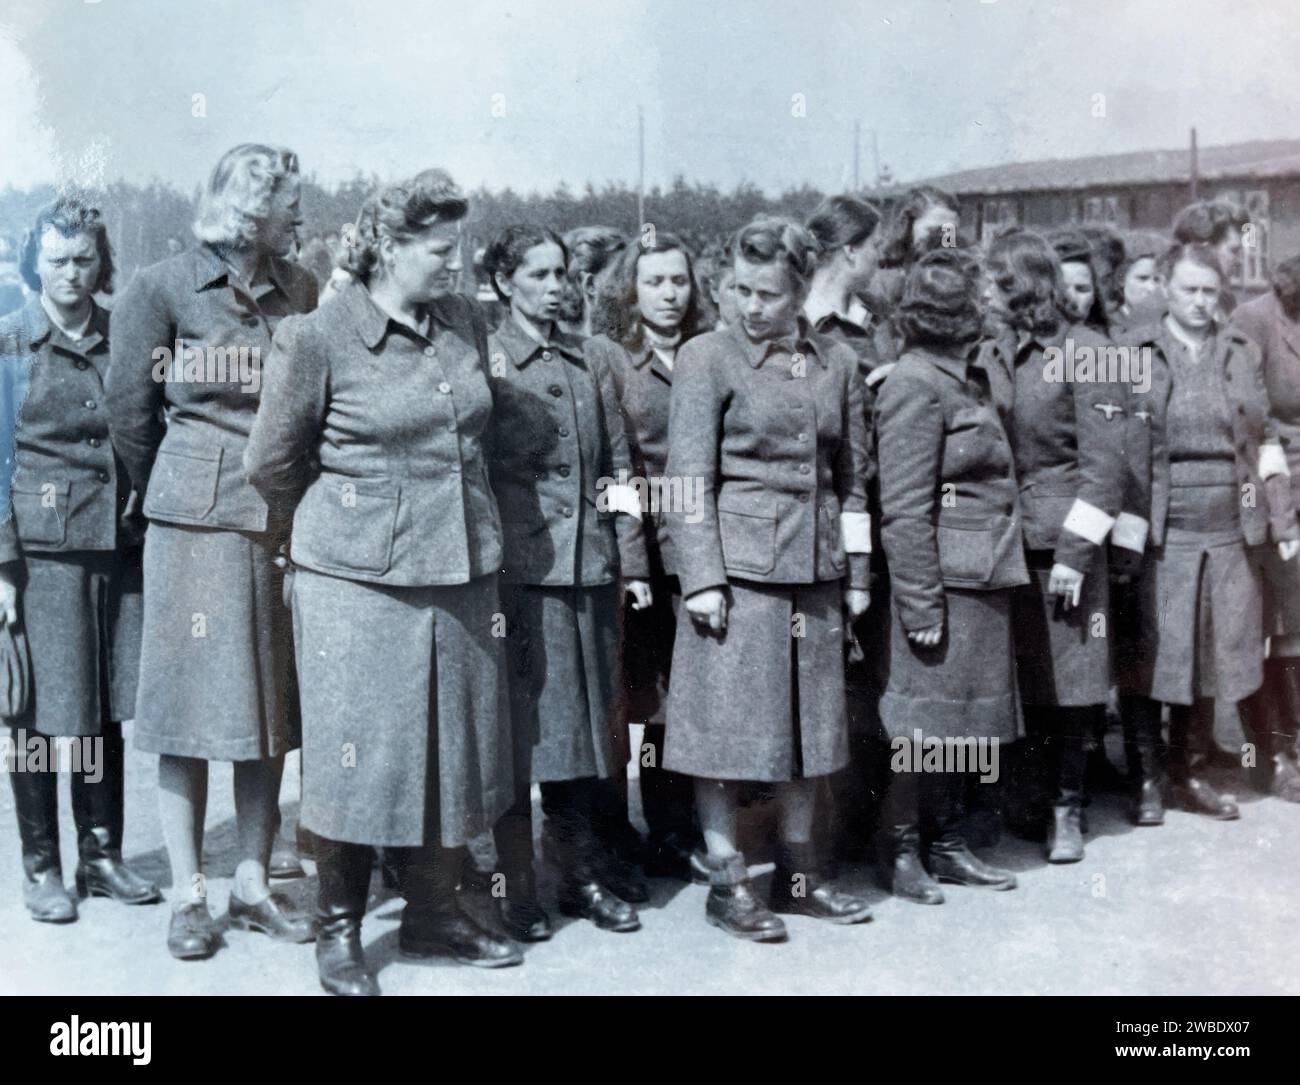 CAMP DE CONCENTRATION DE BERGEN-BELSEN, ALLEMAGNE. Les gardes féminines sont défilées après la libération du camp par les troupes britanniques le 15 avril 1945. Banque D'Images